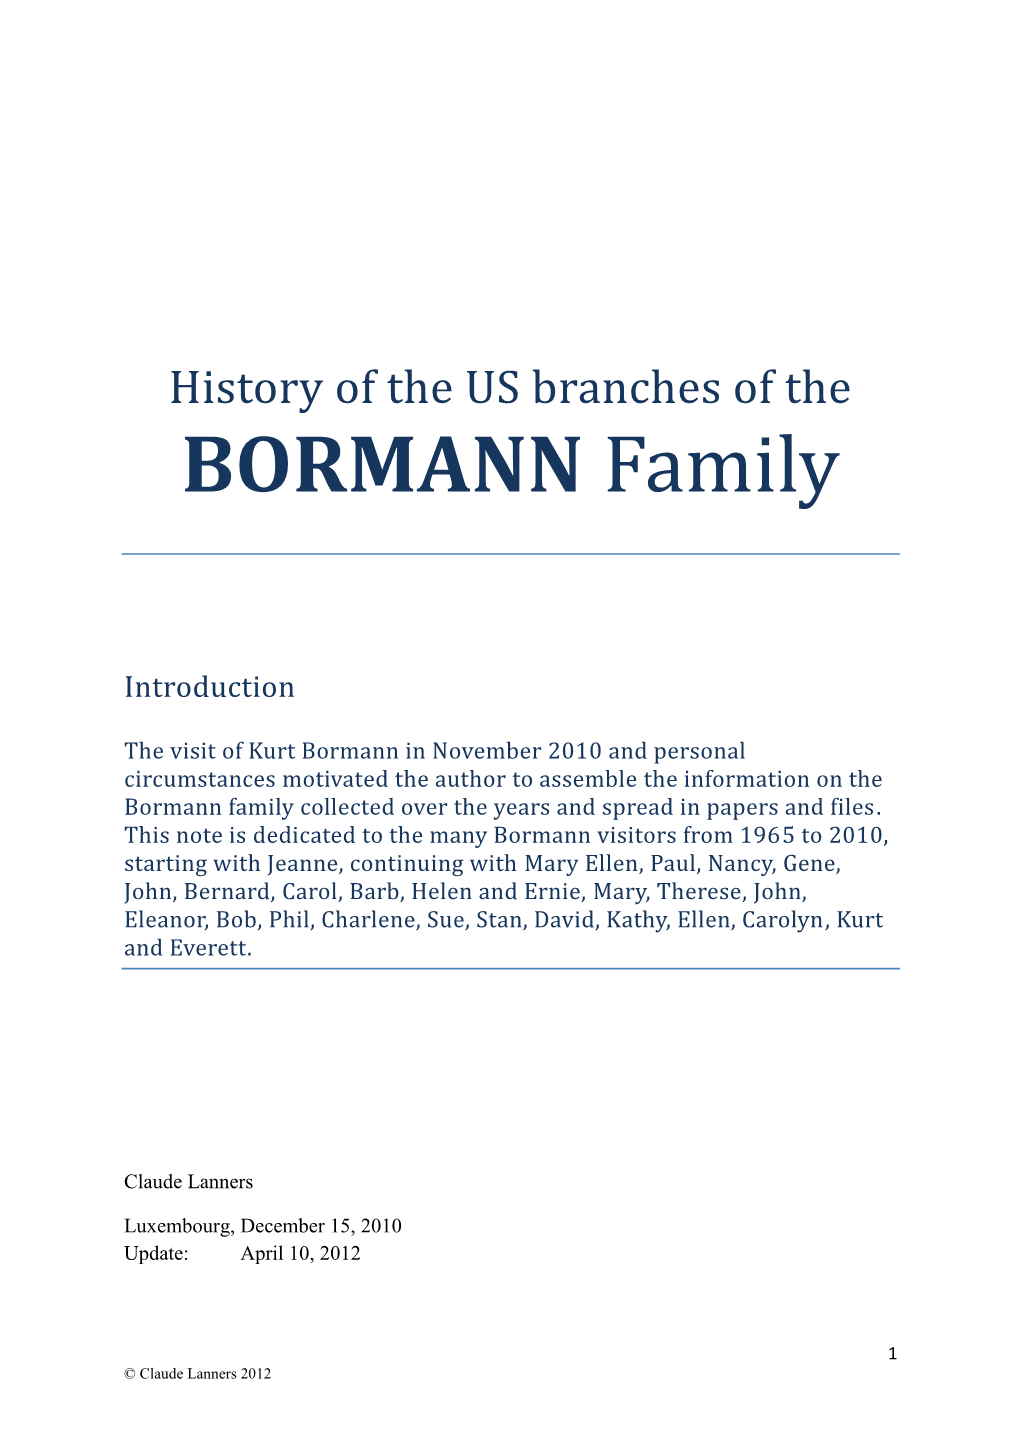 BORMANN Family